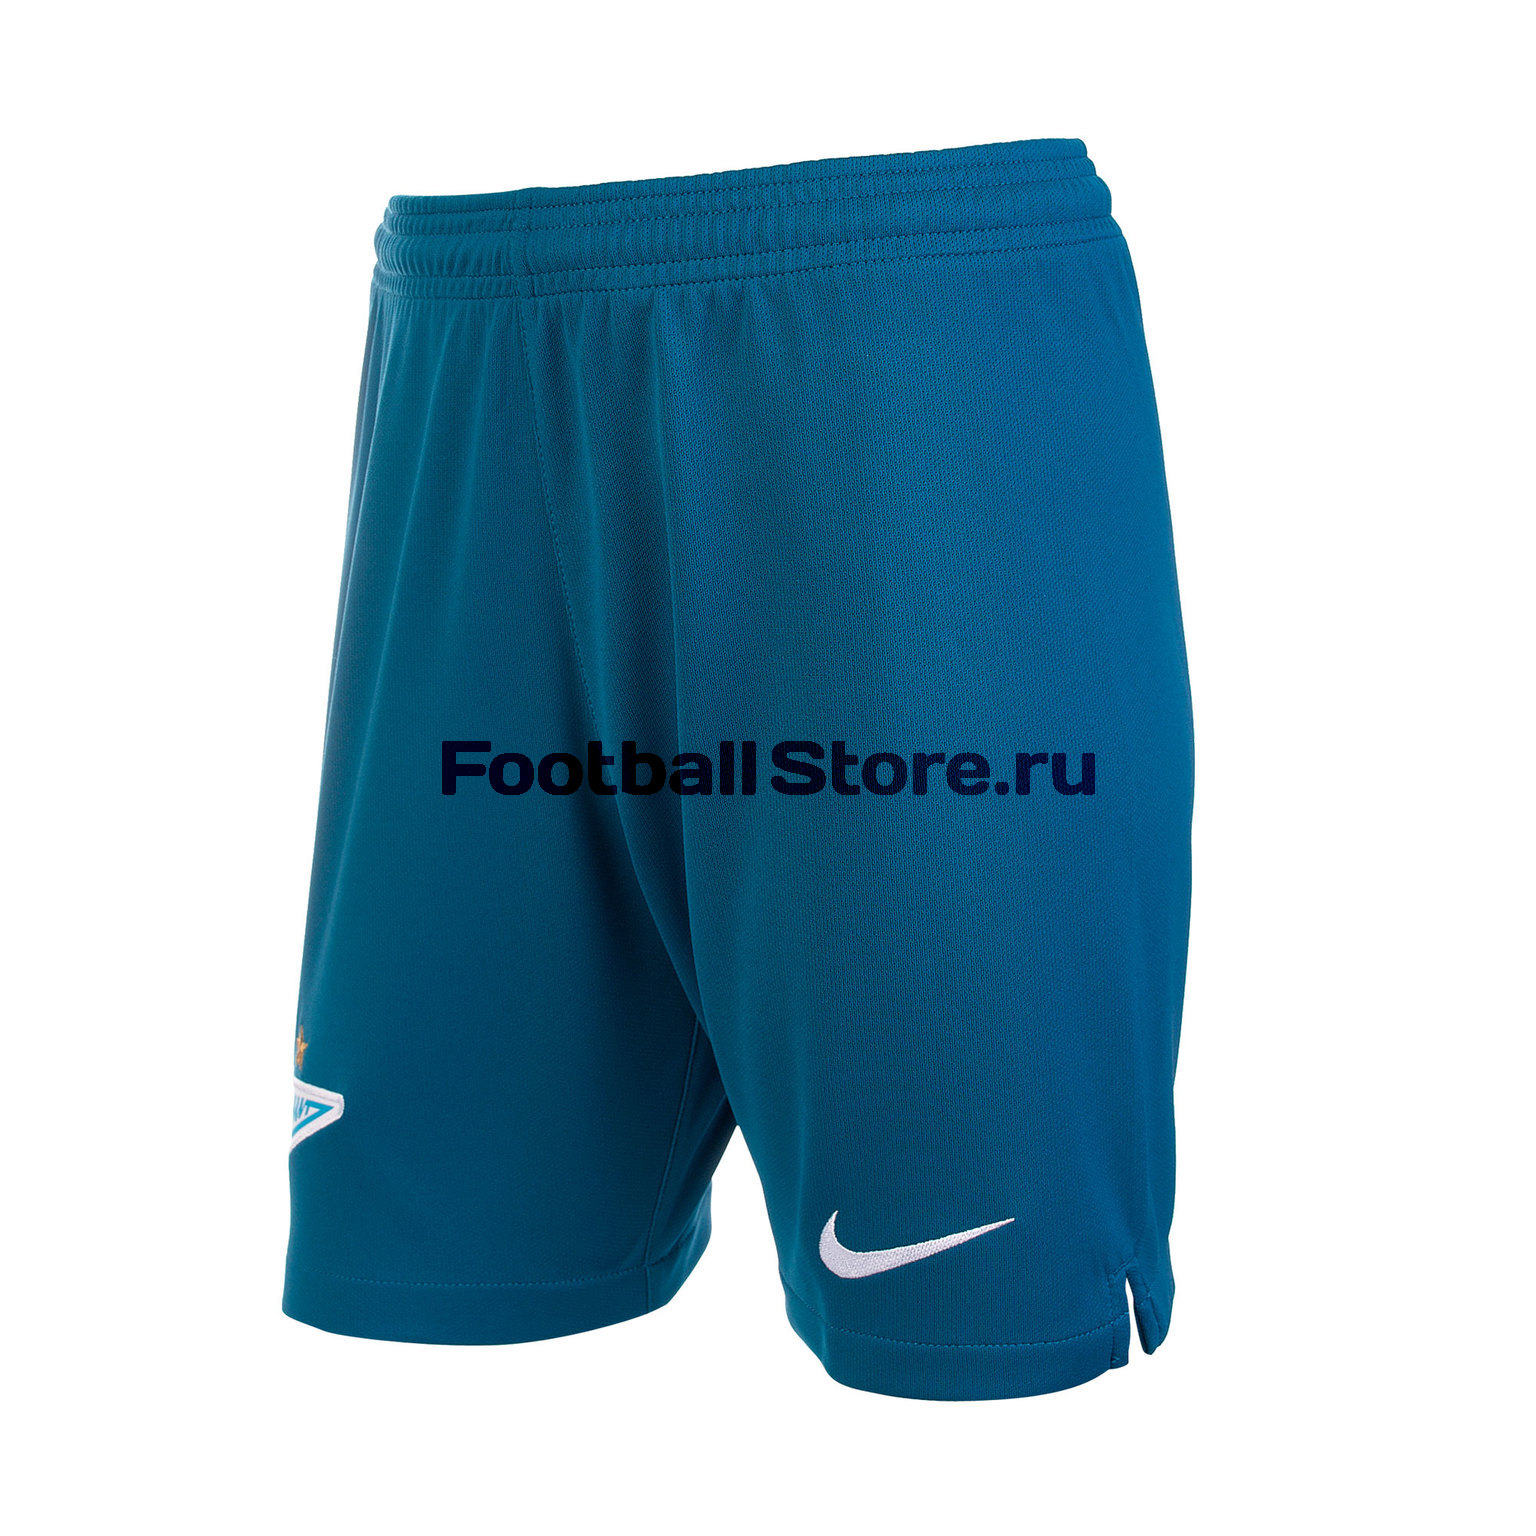 Шорты домашние подростковые Nike Zenit сезон 2019/20